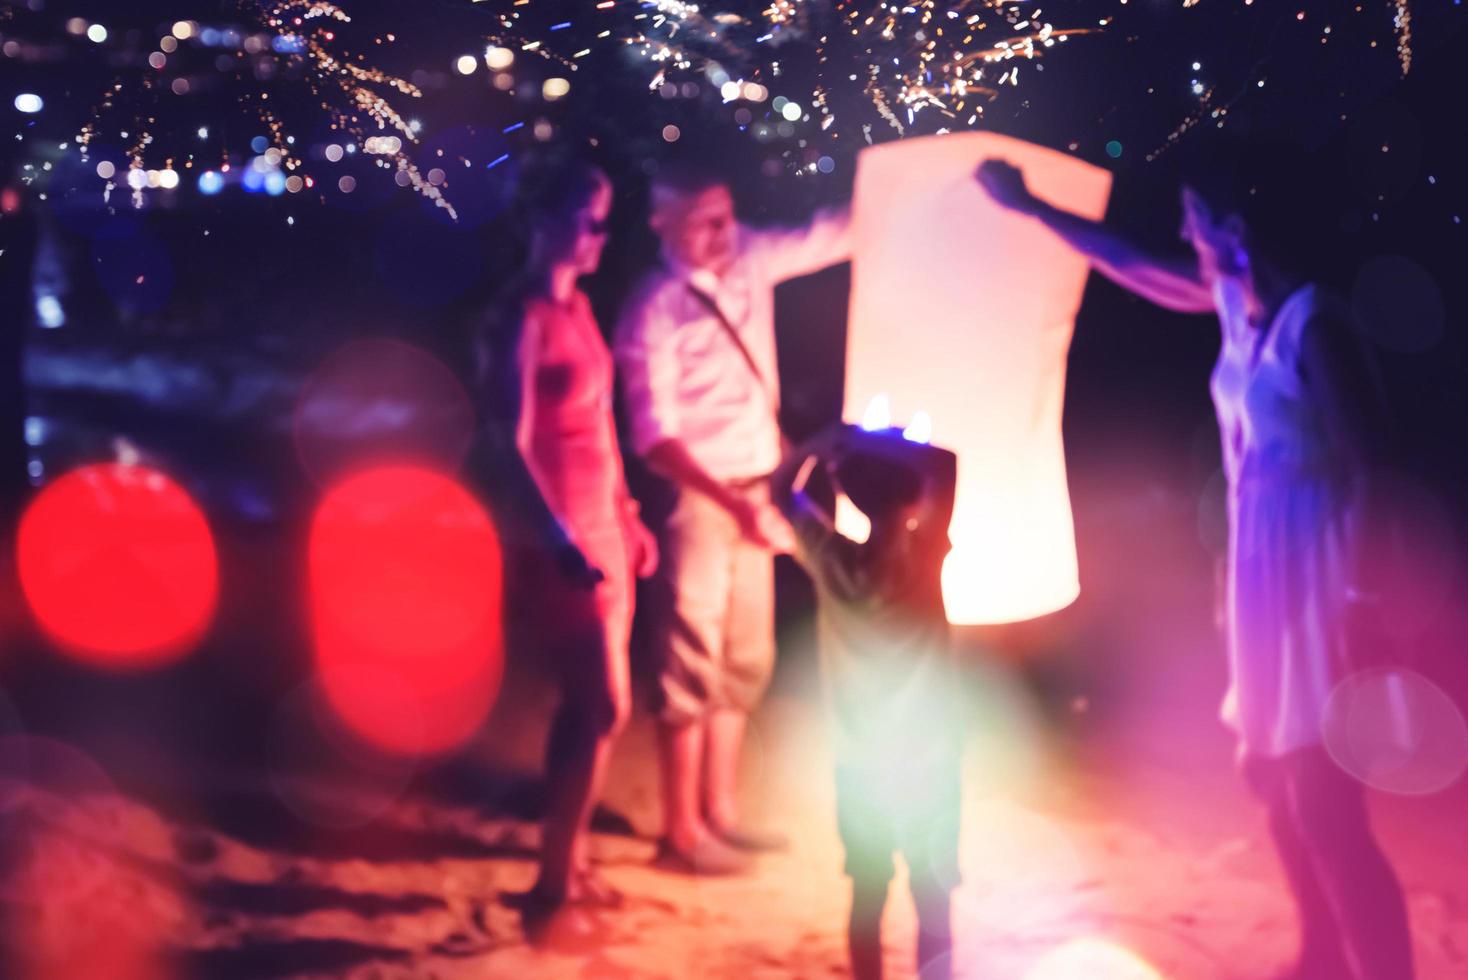 Leute feiern neues Jahr. Feuerwerk-Kreis-Unschärfe. bunt zum Feiern. thailändischer strand foto